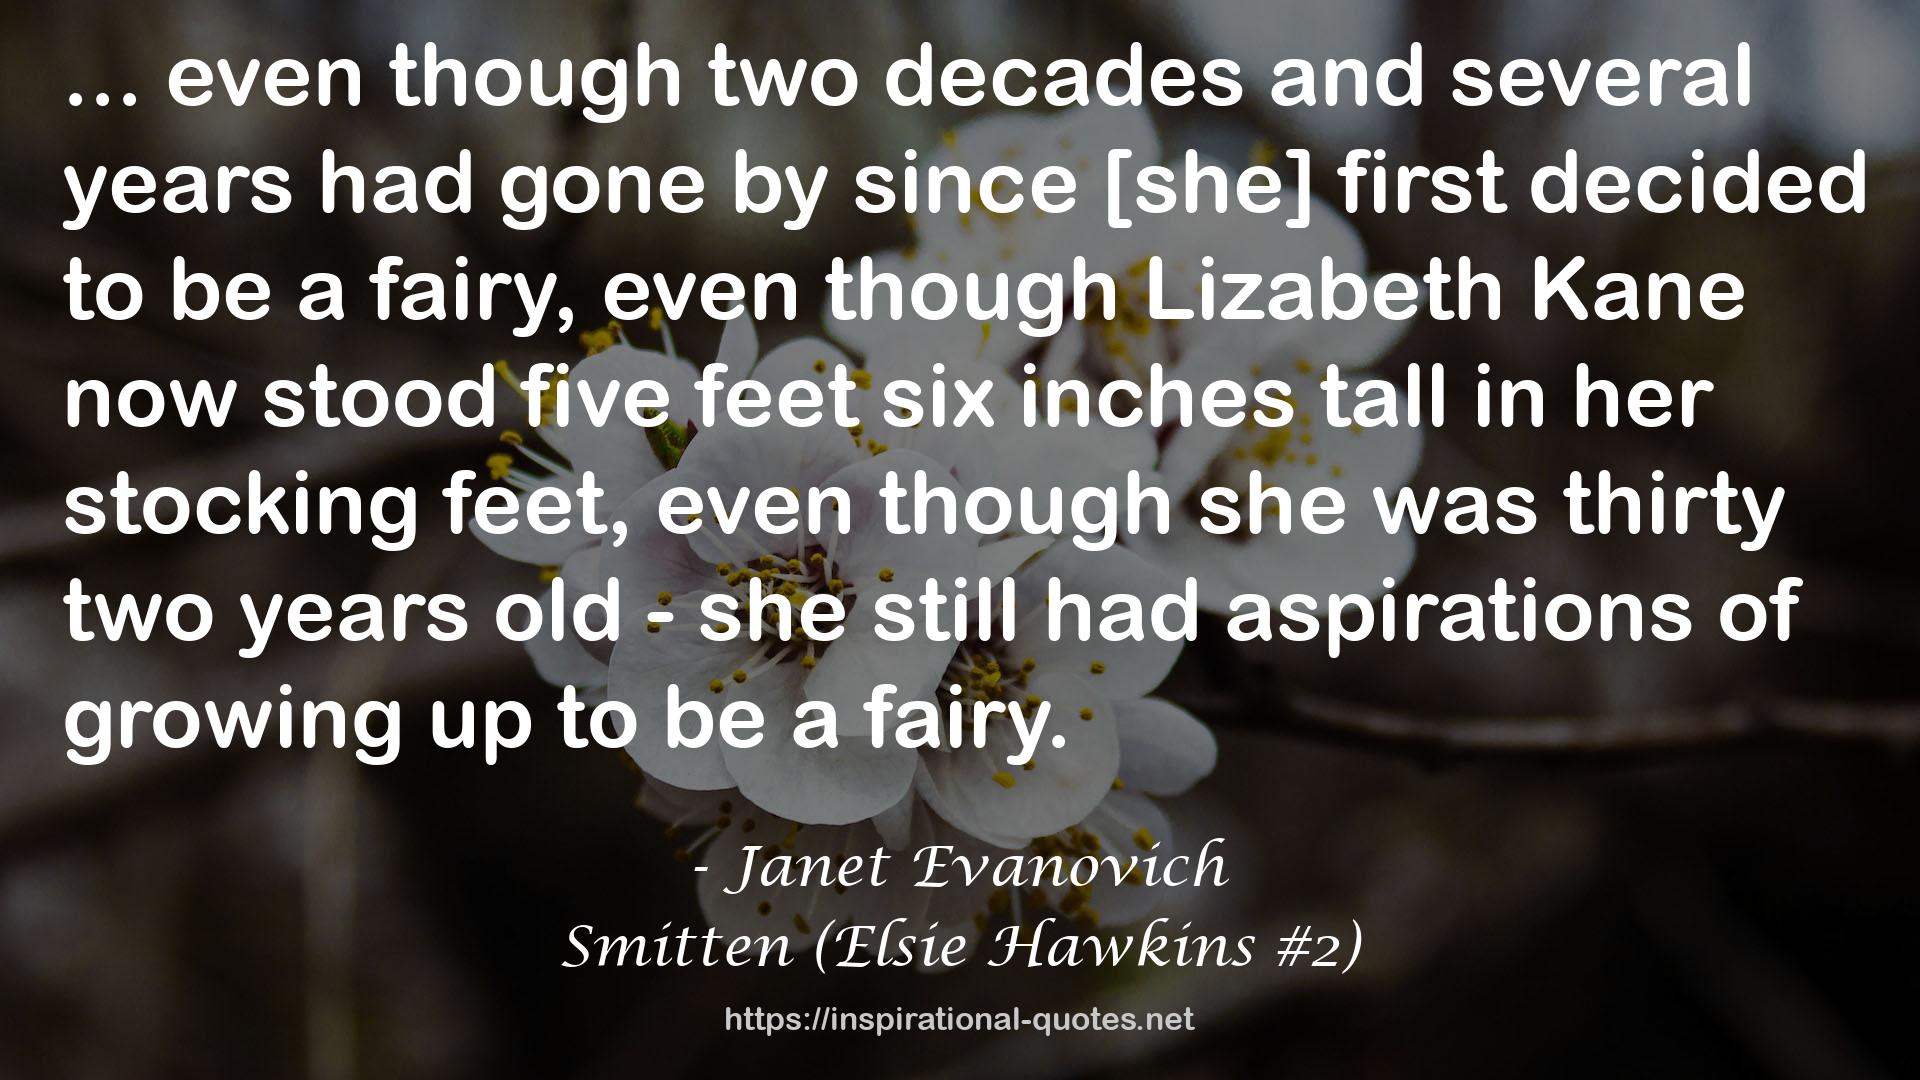 Smitten (Elsie Hawkins #2) QUOTES